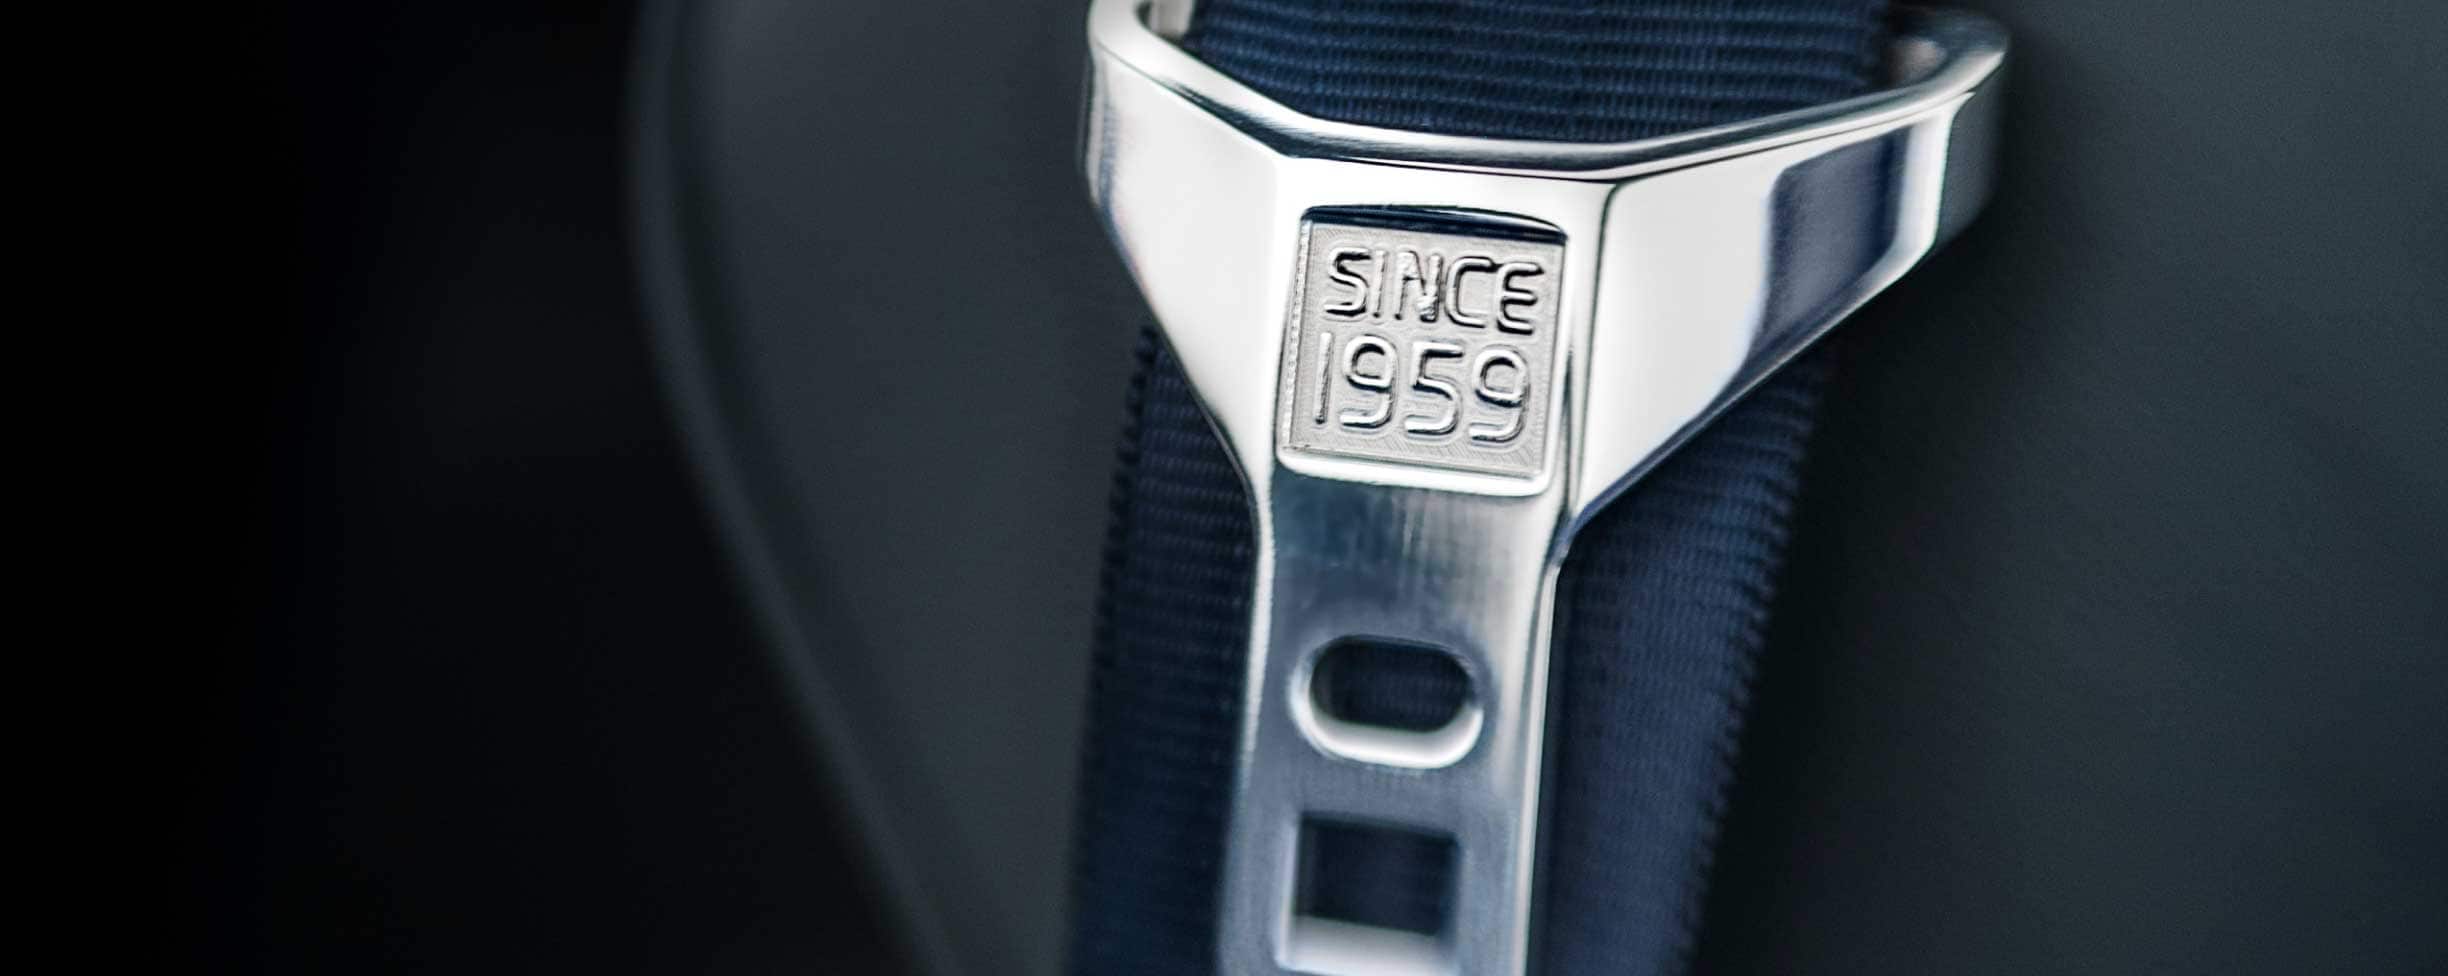 Un cinturón de seguridad gris con el texto "Since 1959" grabado en la hebilla.